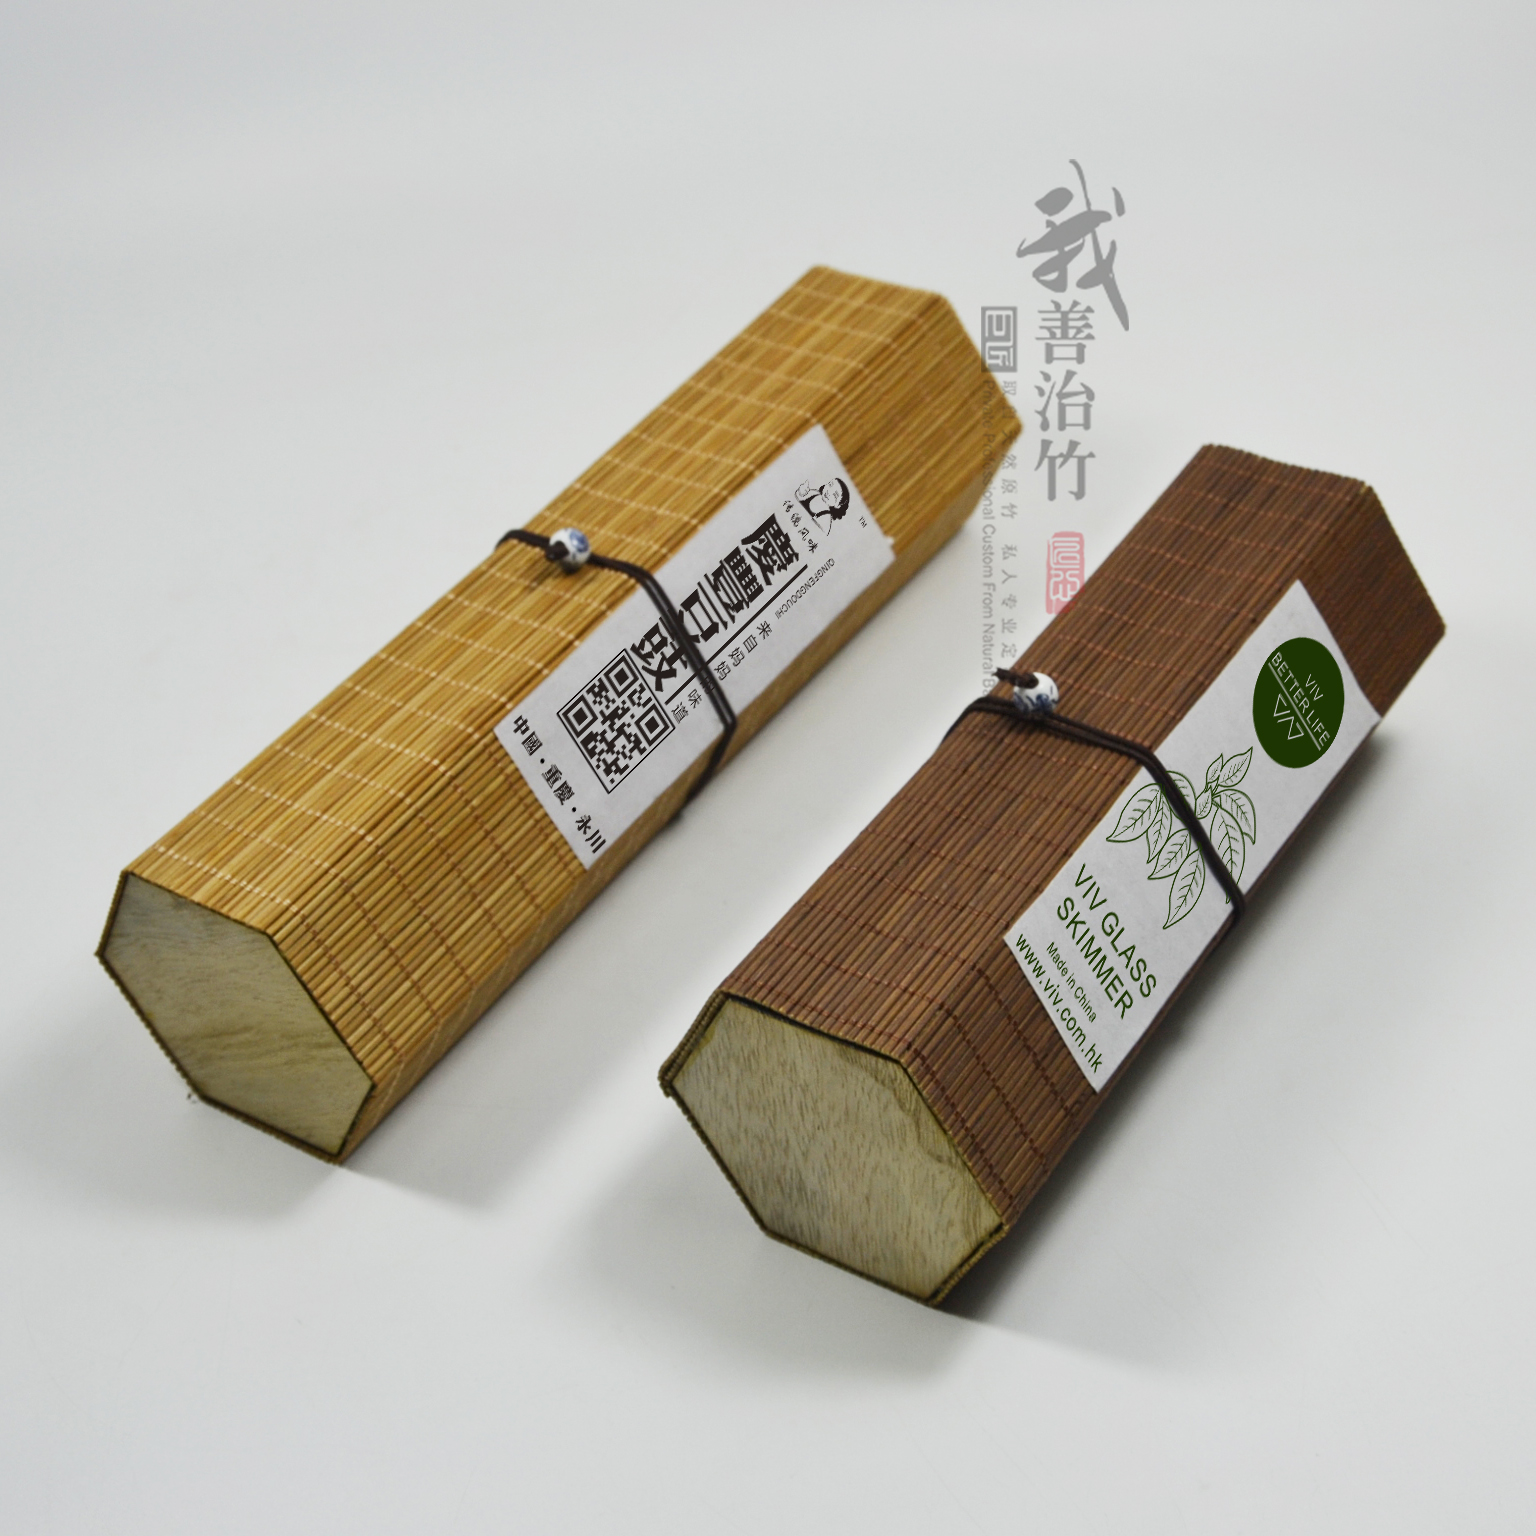 厂家批发六角竹丝盒竹帘盒竹编盒寿司盒茶叶包装盒竹包装竹制品